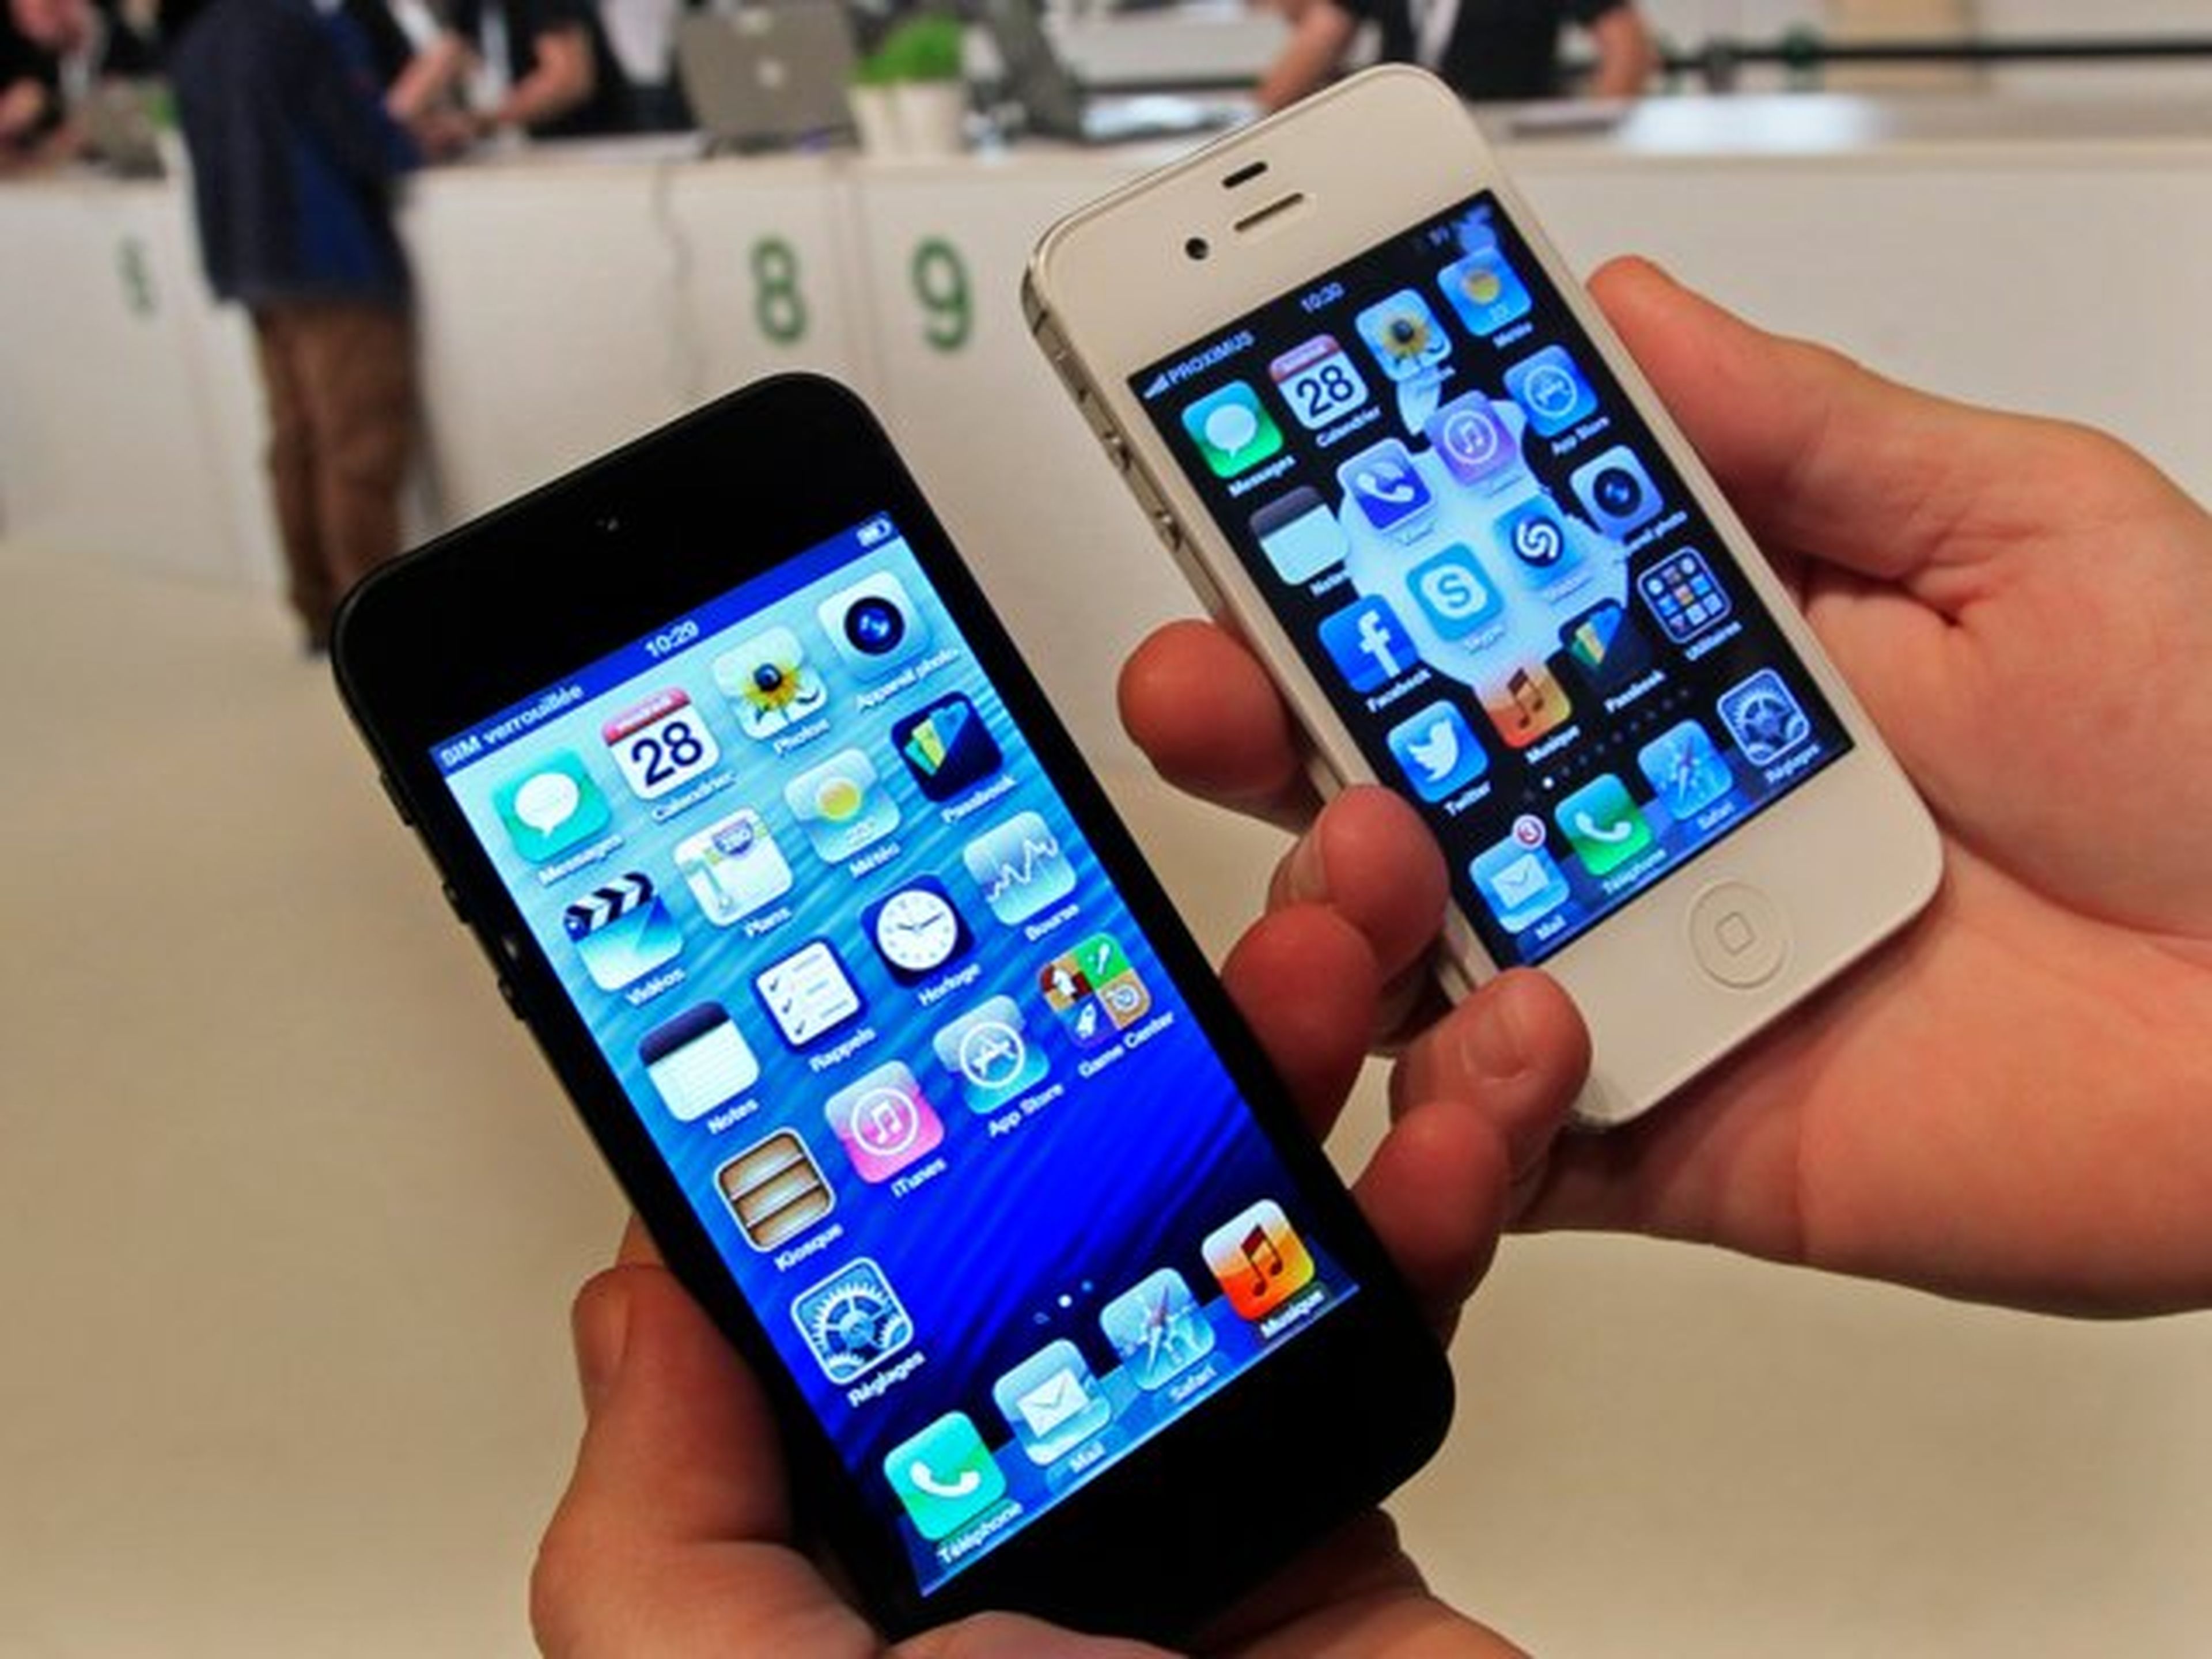 El iPhone 5 de 4 pulgadas a la izquierda y el iPhone 4 de 3,5 pulgadas a la derecha